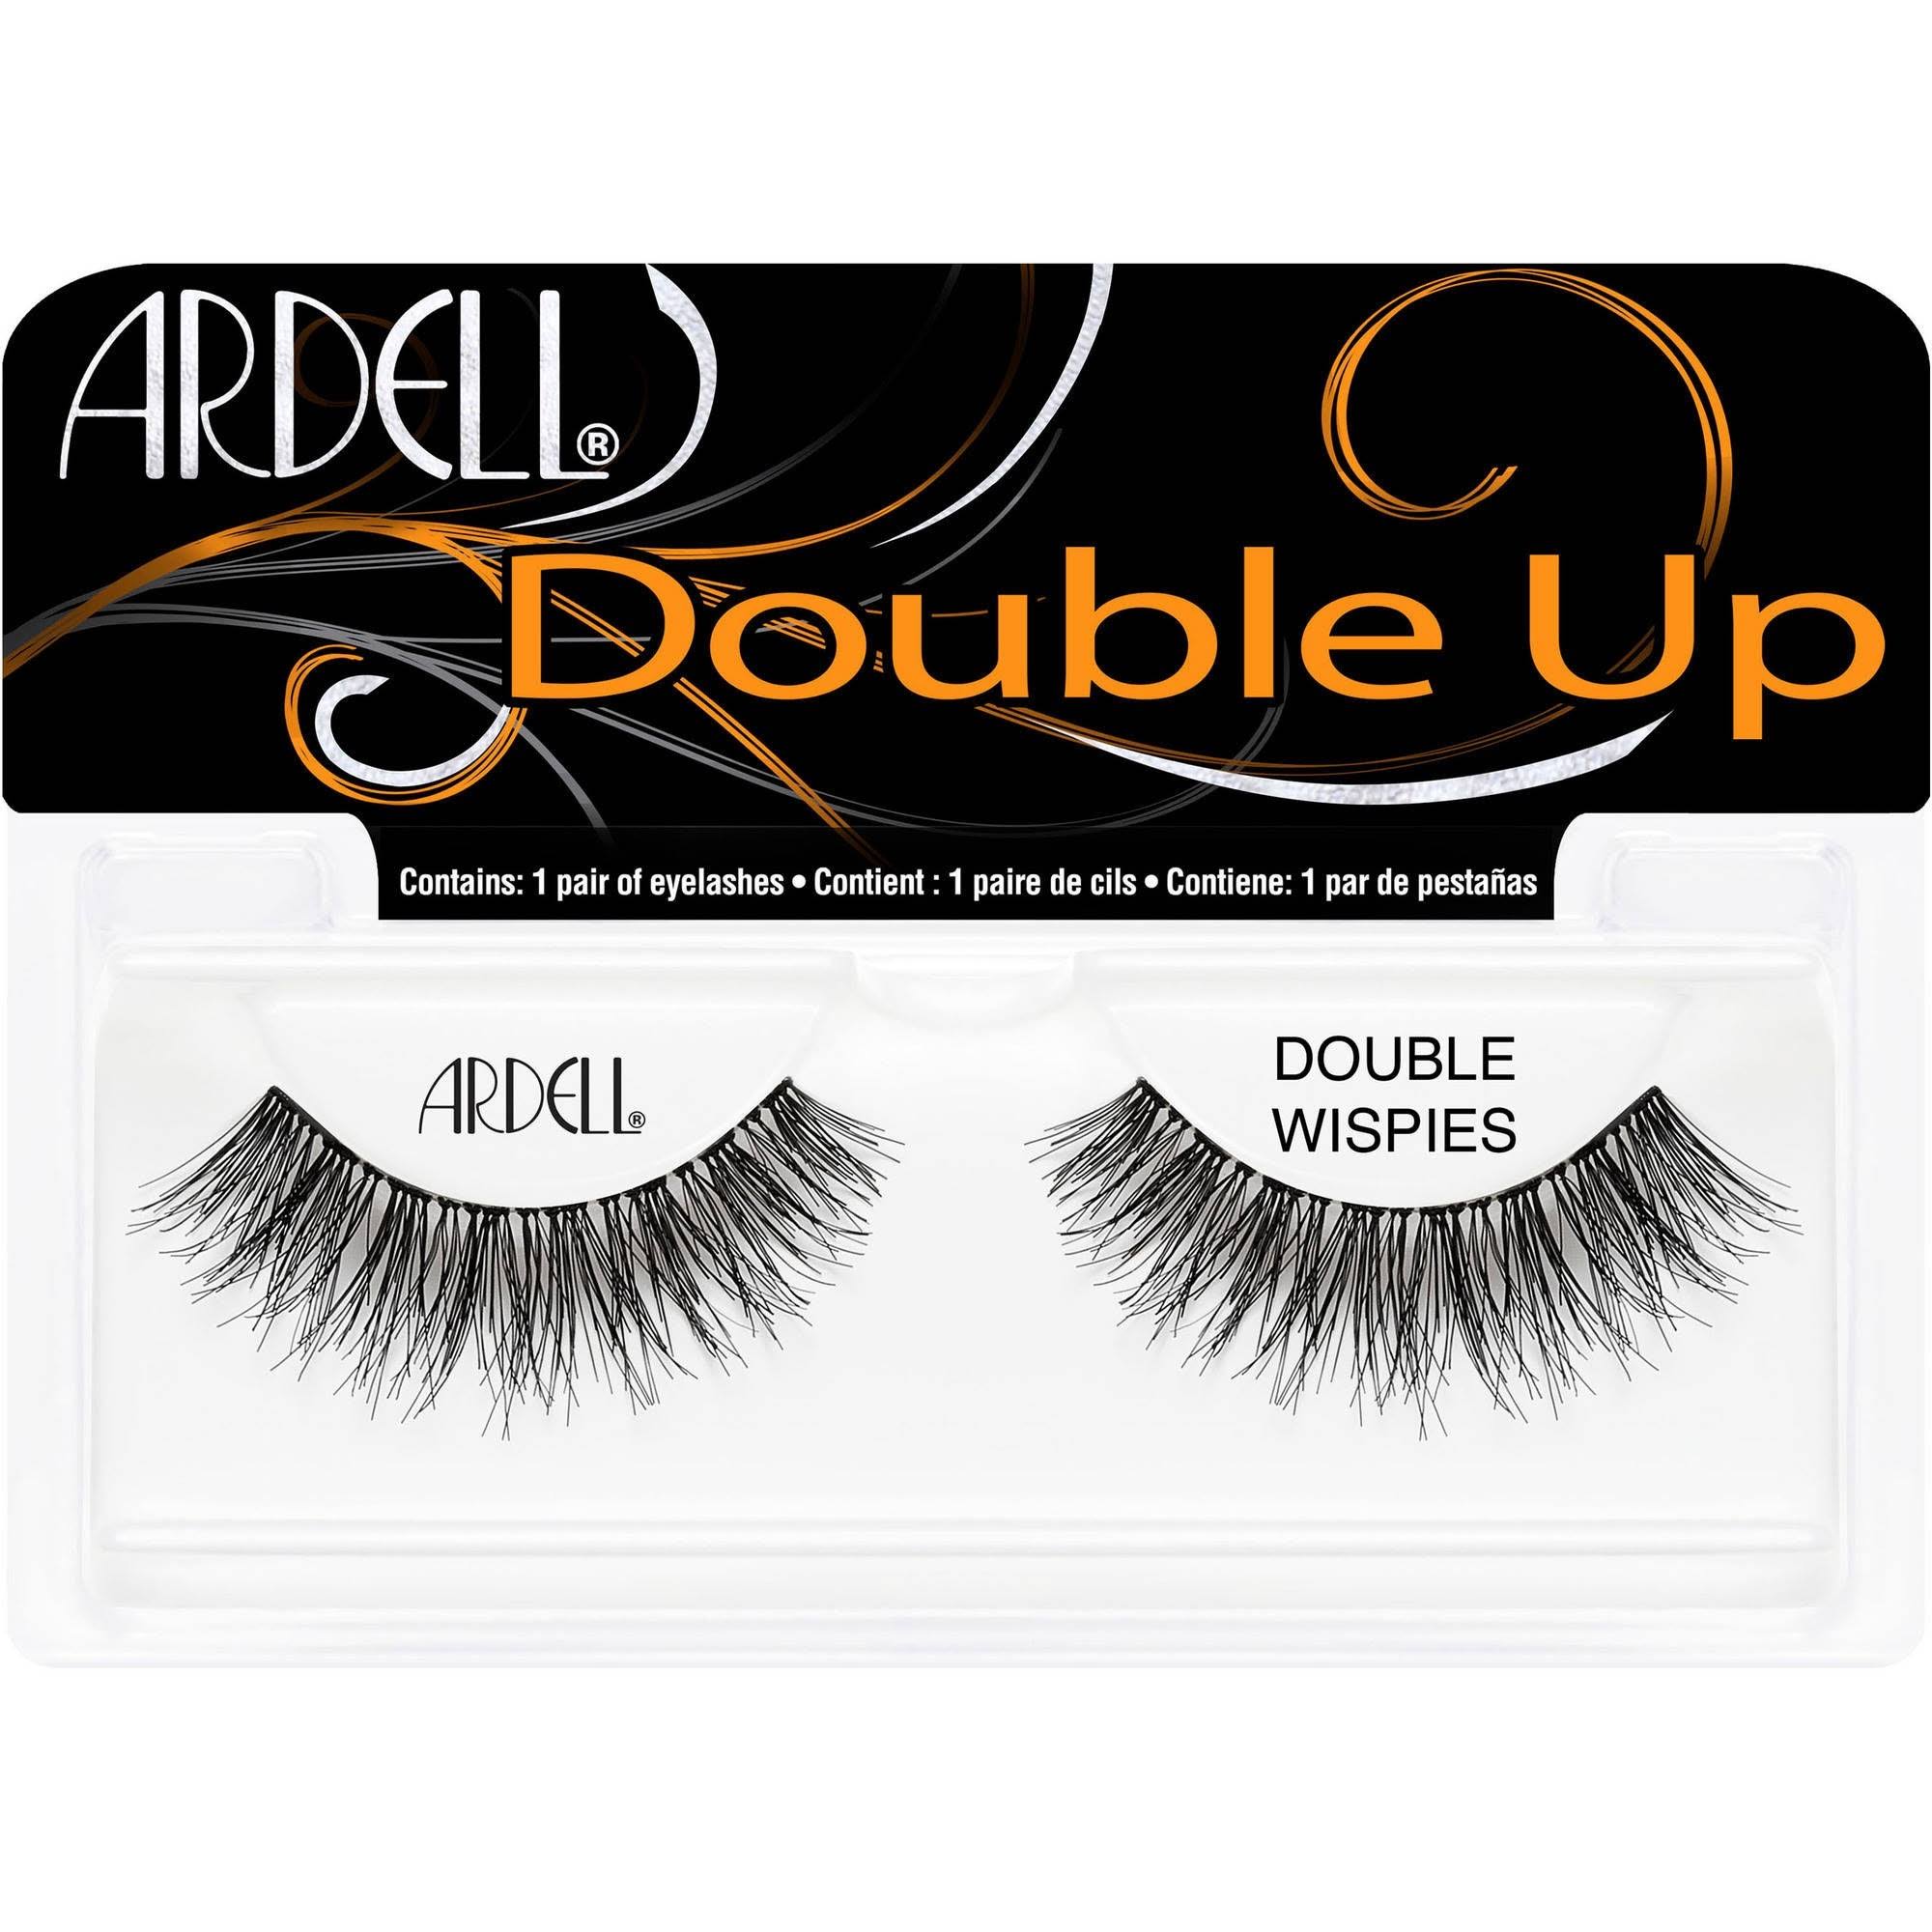 Ardell Double Up Double Wispies False Eyelashes